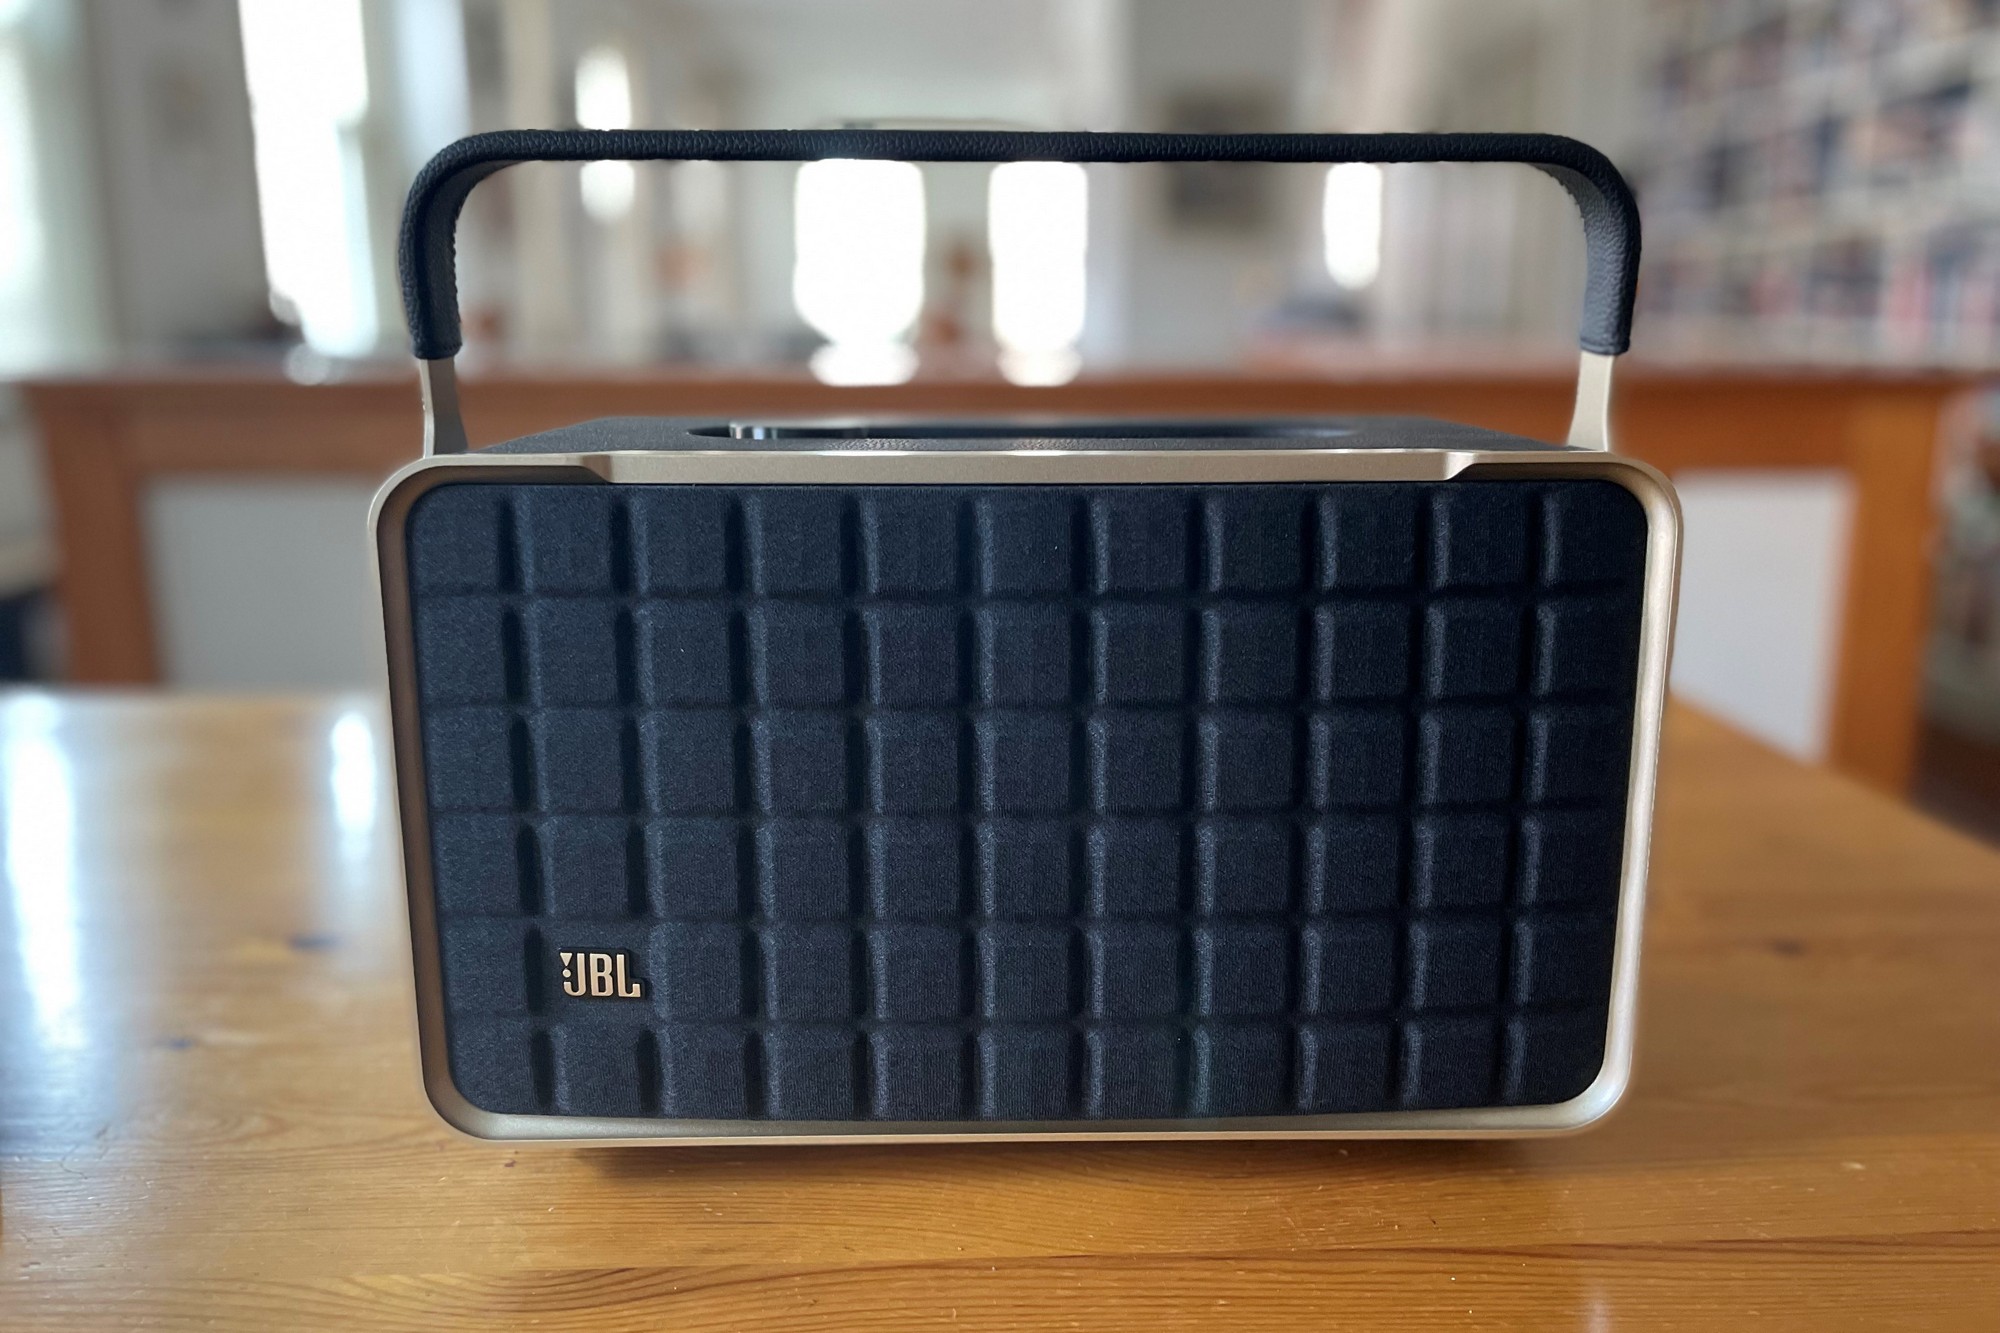 JBL Authentics 300 -- best-sounding portable smart speaker, runner-up